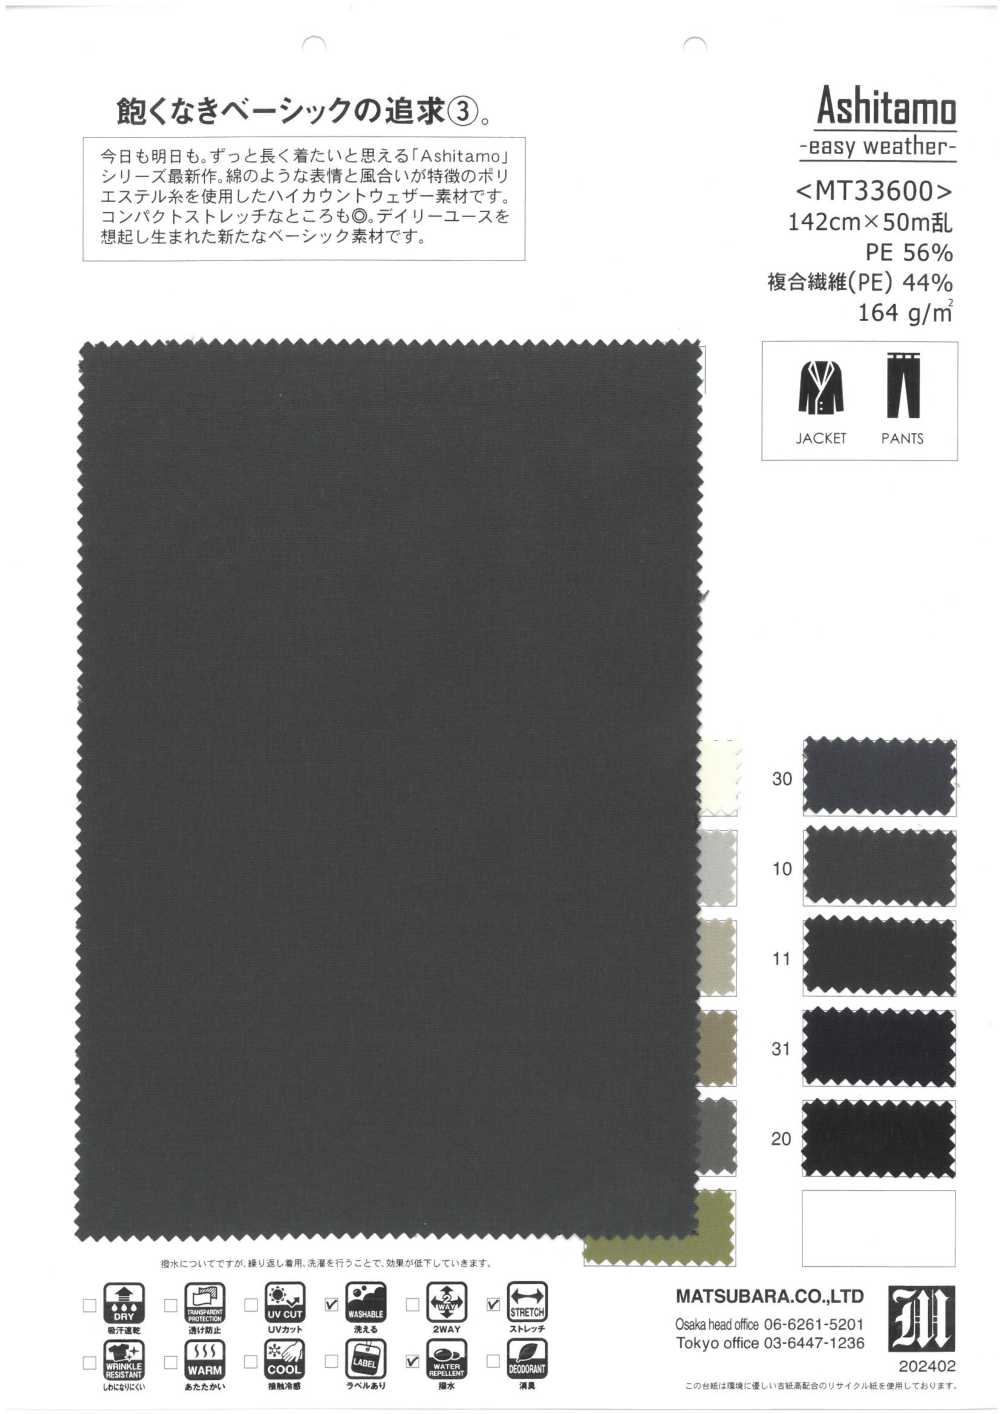 MT33600 Ashitamo -Meteo Facile-[Tessile / Tessuto] Matsubara